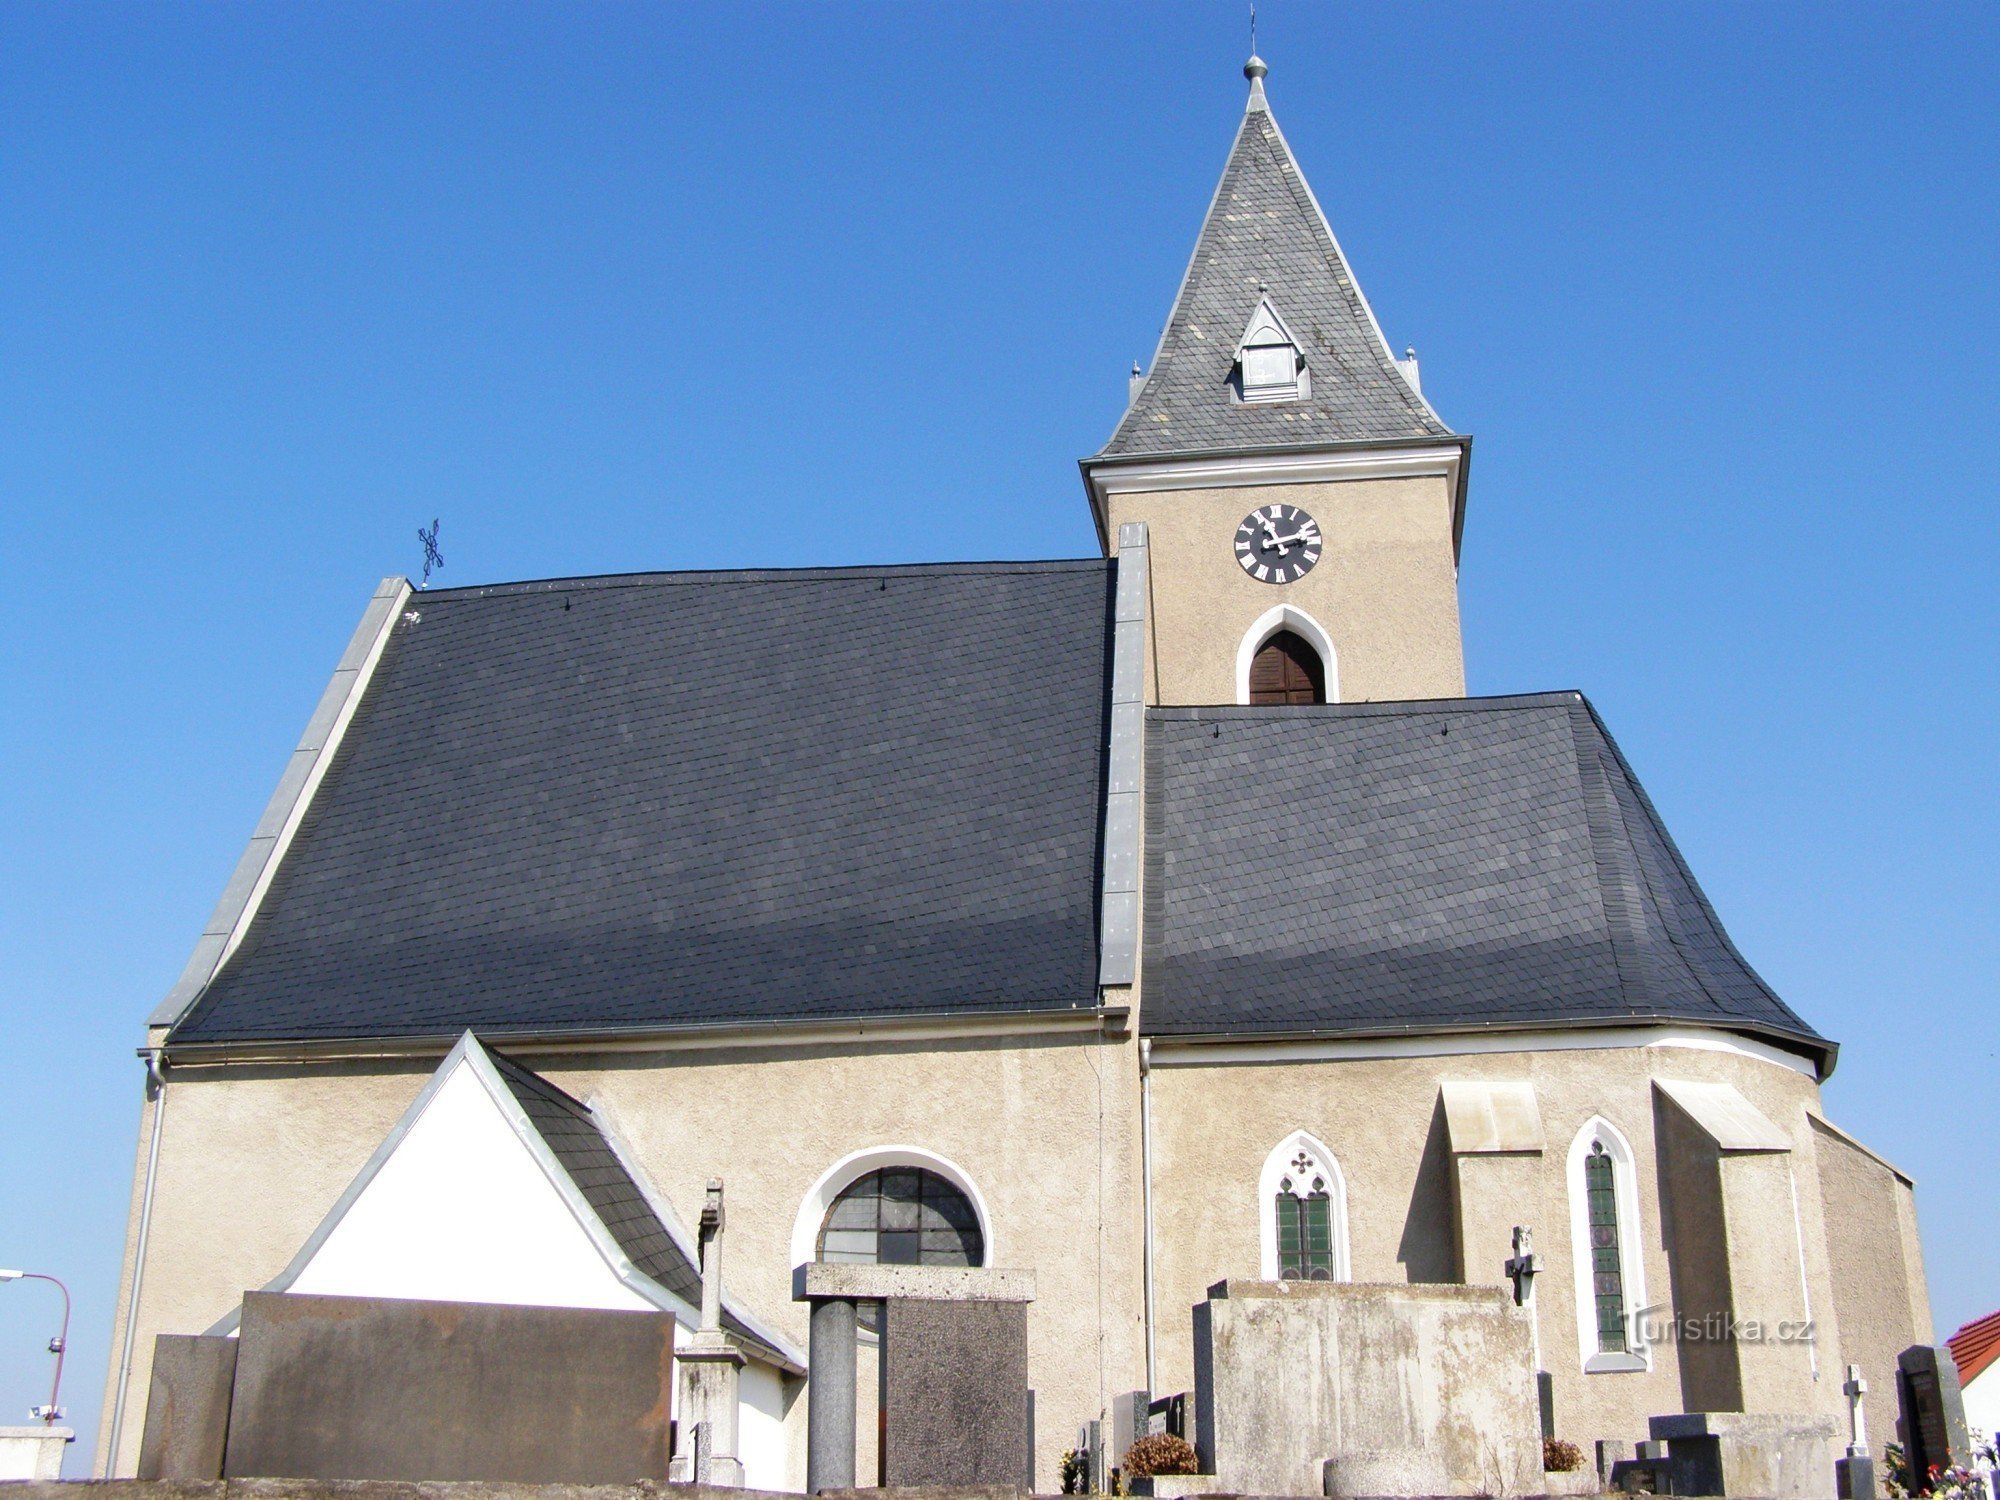 Dríteč - église de St. Pierre et Paul